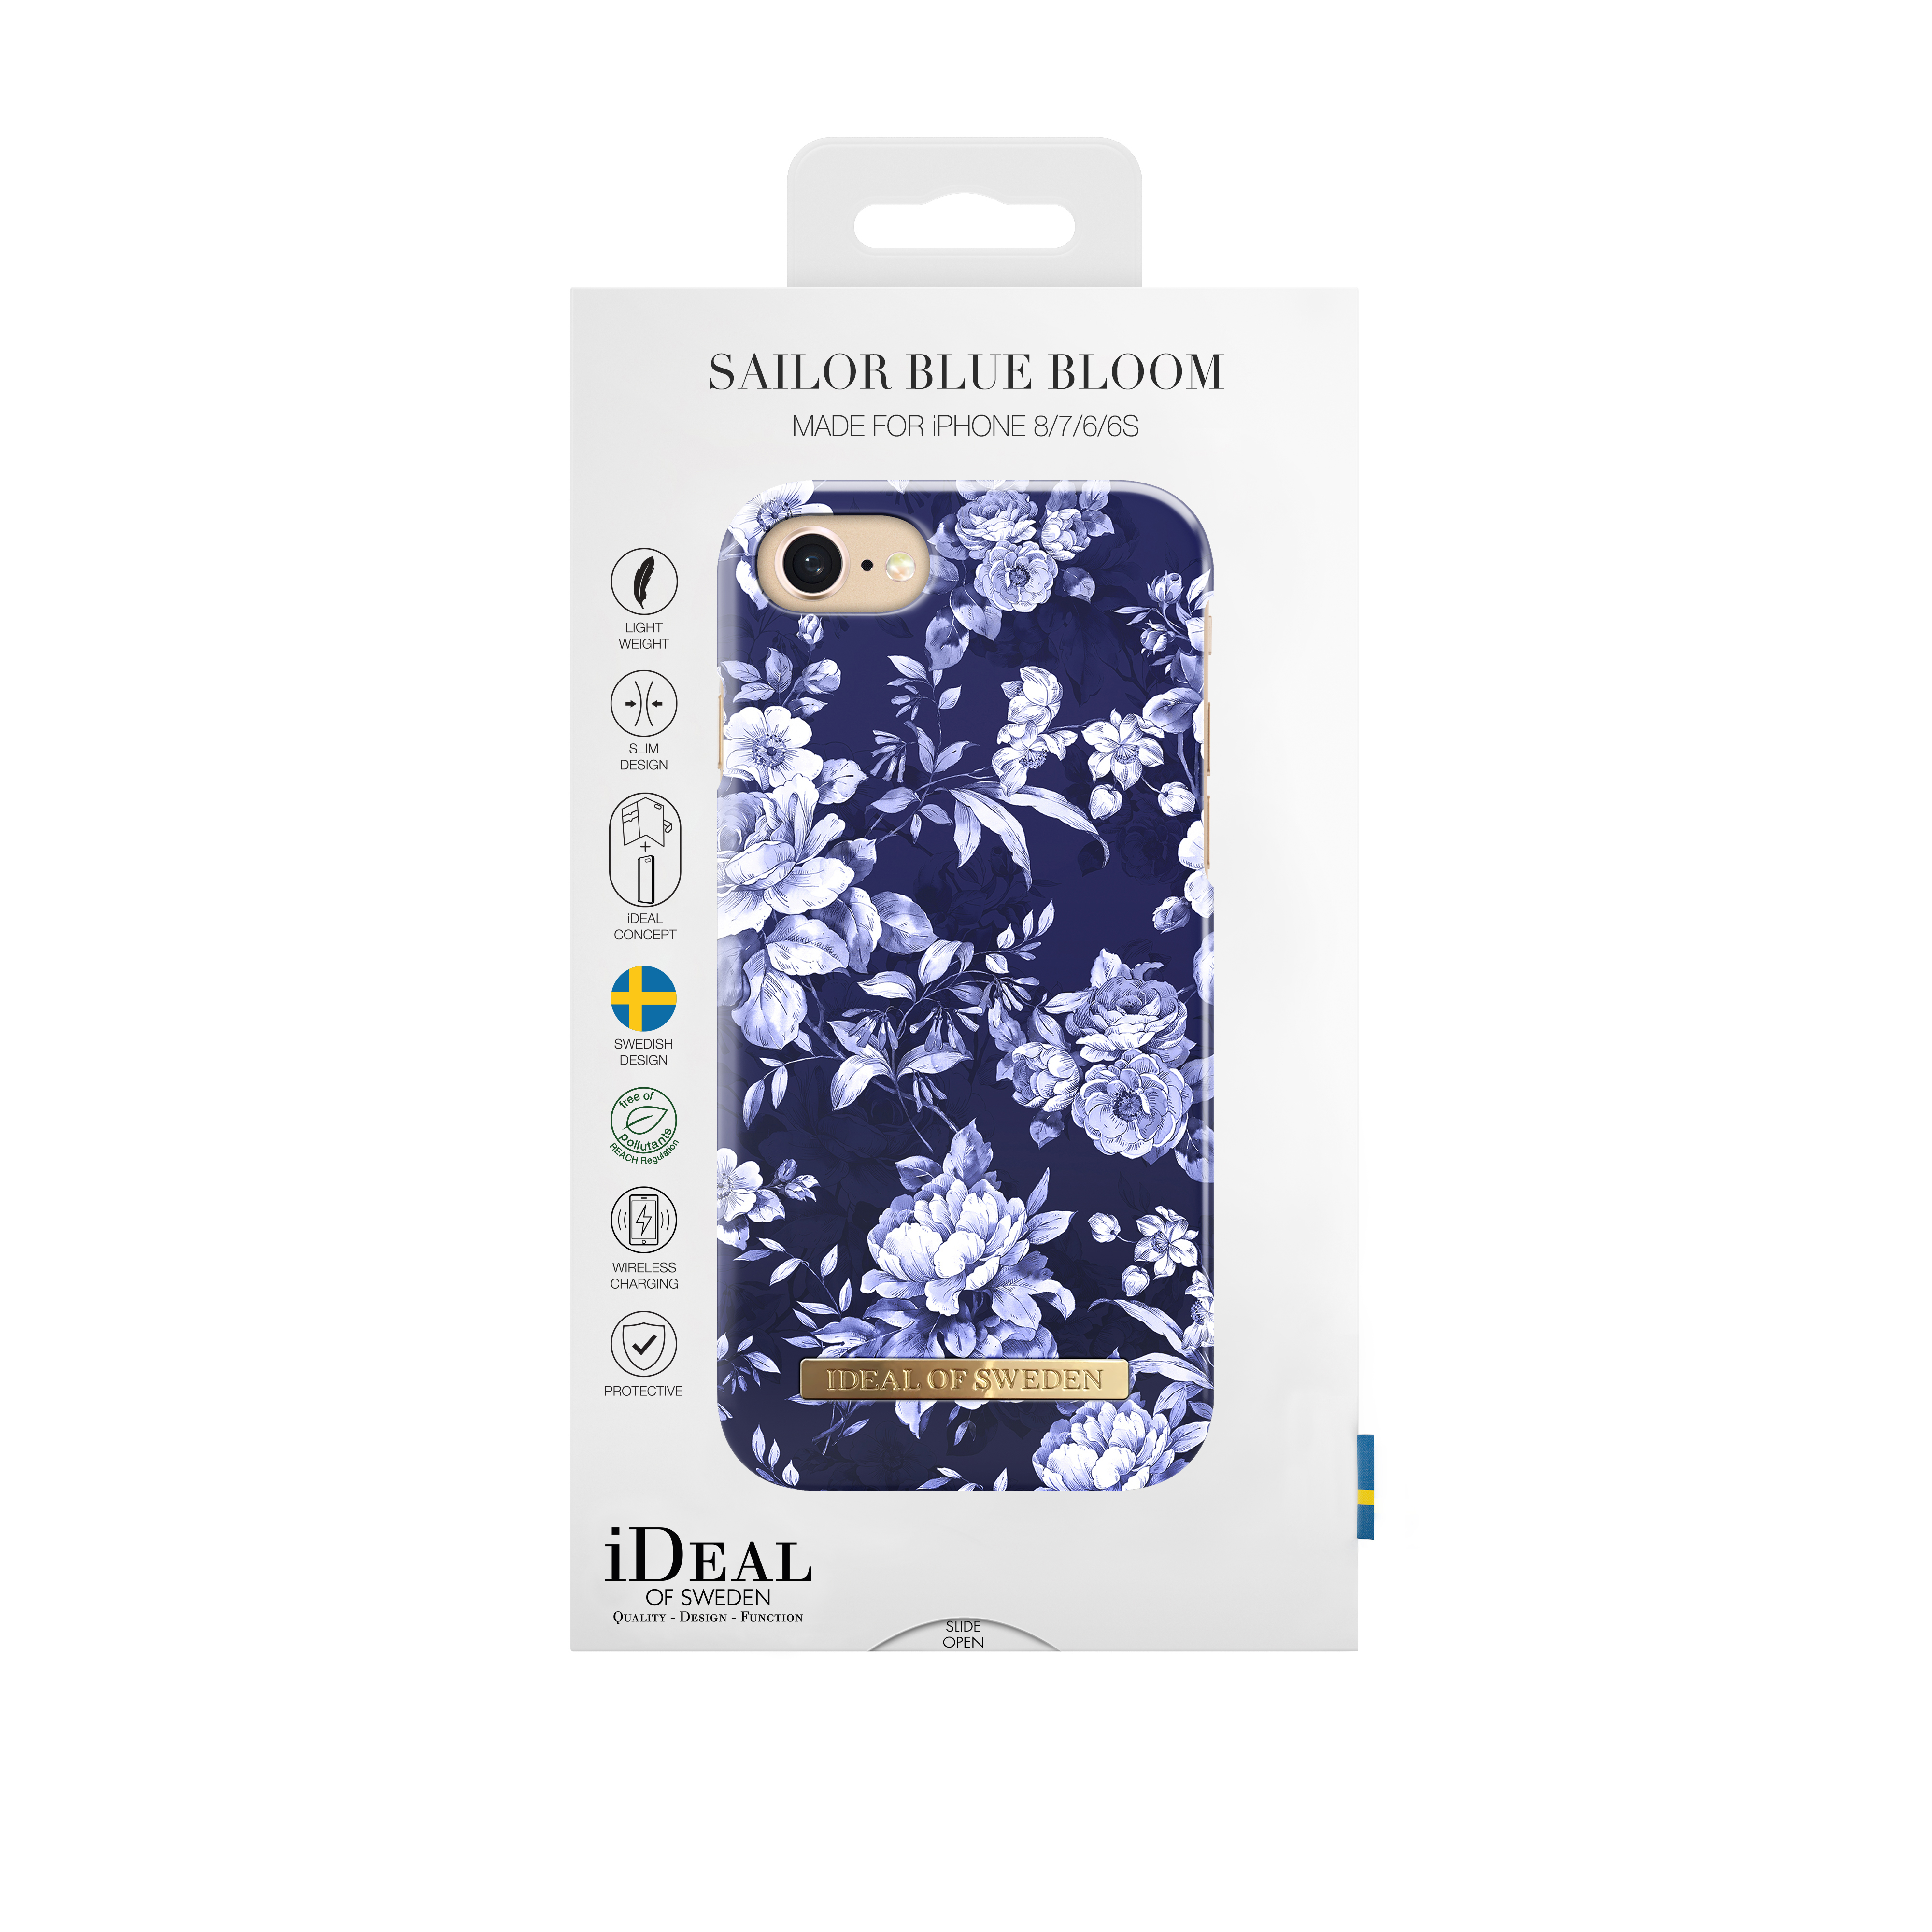 IDEAL iPhone Bloom, Bloom Sailor OF 7, Apple, Blue SWEDEN Backcover, Sailor Blue